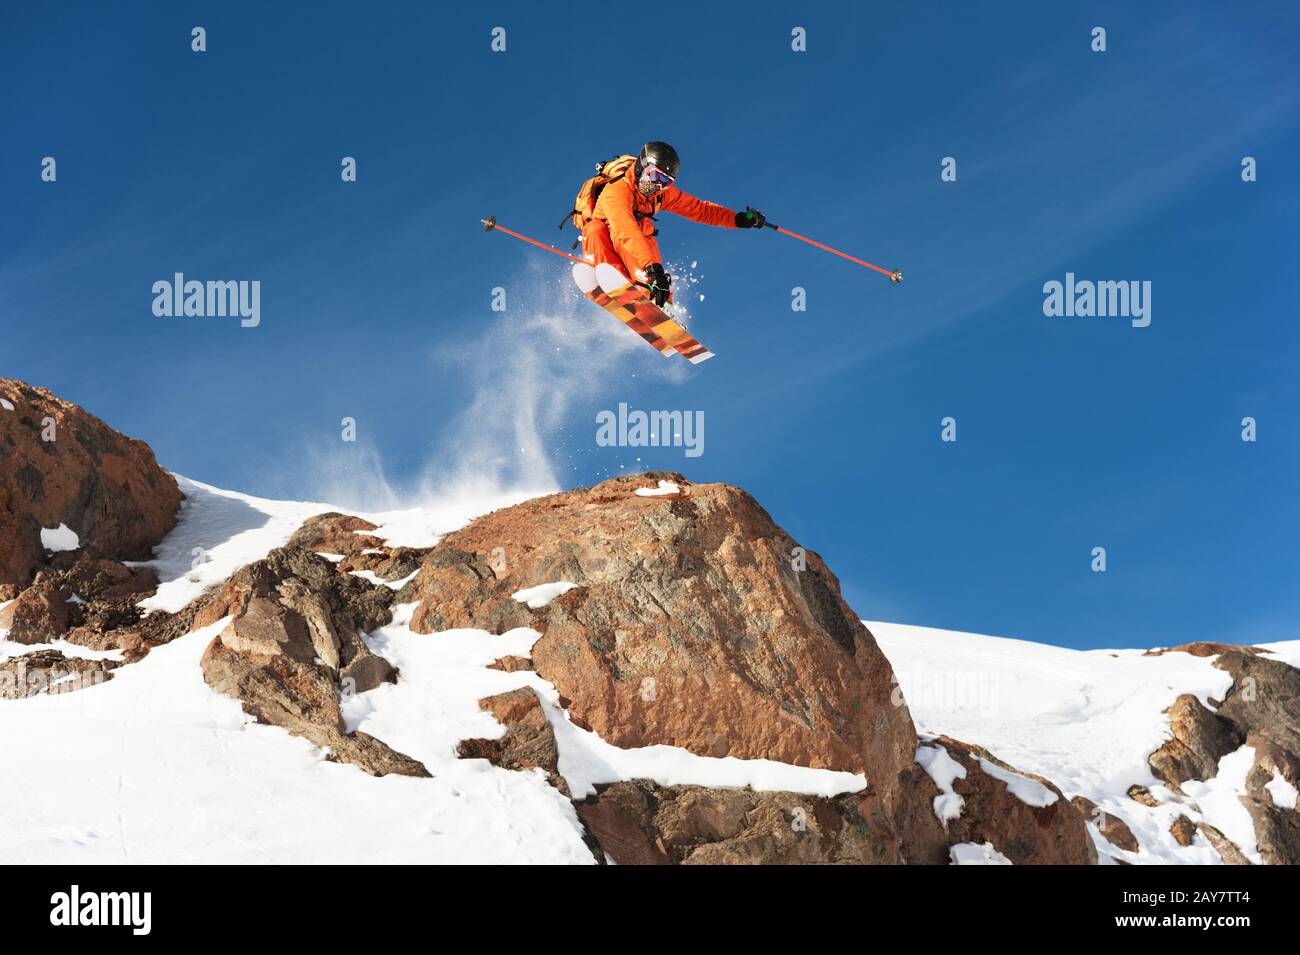 Ein professioneller Skifahrer macht einen Sprung von einer hohen Klippe gegen einen blauen Himmel und hinterlässt eine Spur von Schneepulver in den Bergen Stockfoto